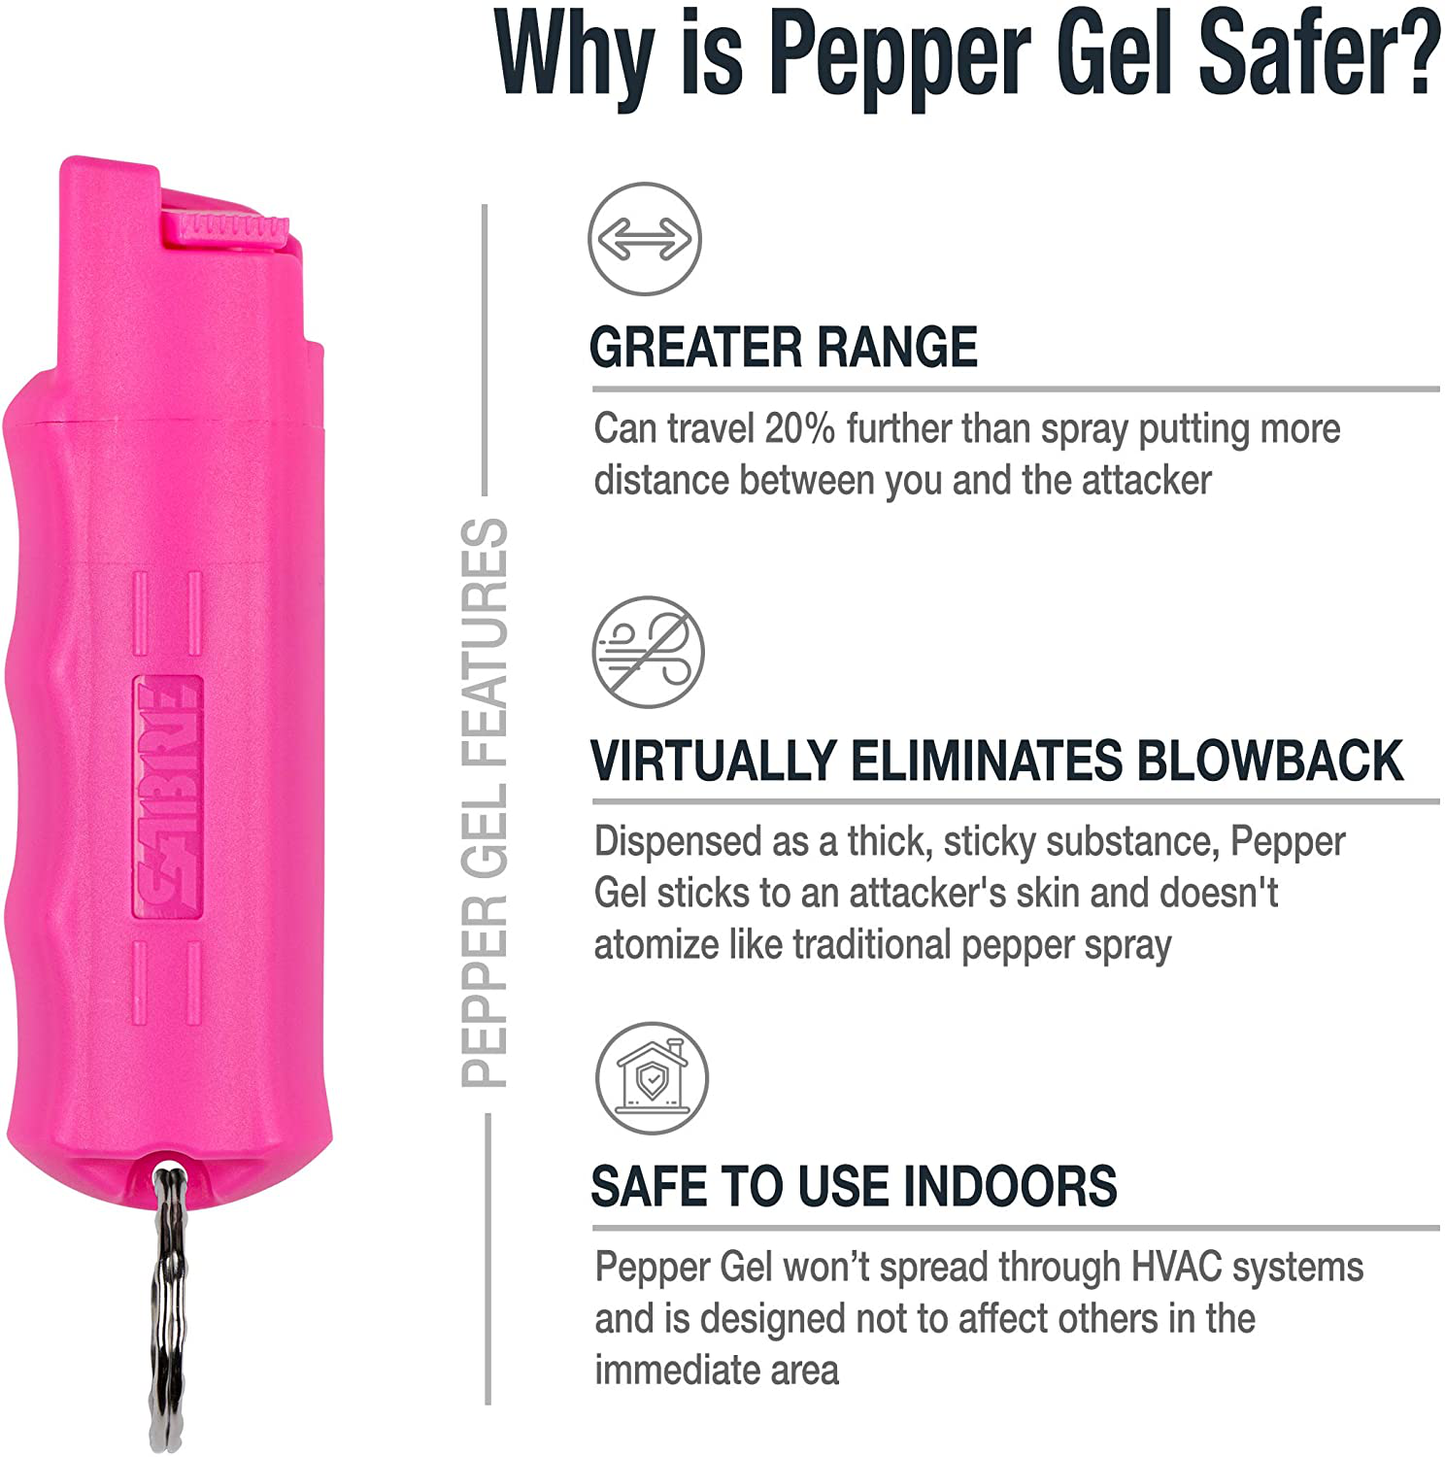 SABRE RED Campus Safety Pepper Gel with Quick Release Key Ring, 25 Bursts, 12-Foot (4-Meter) Range, Gel is Safer, Ergonomic Finger Grip